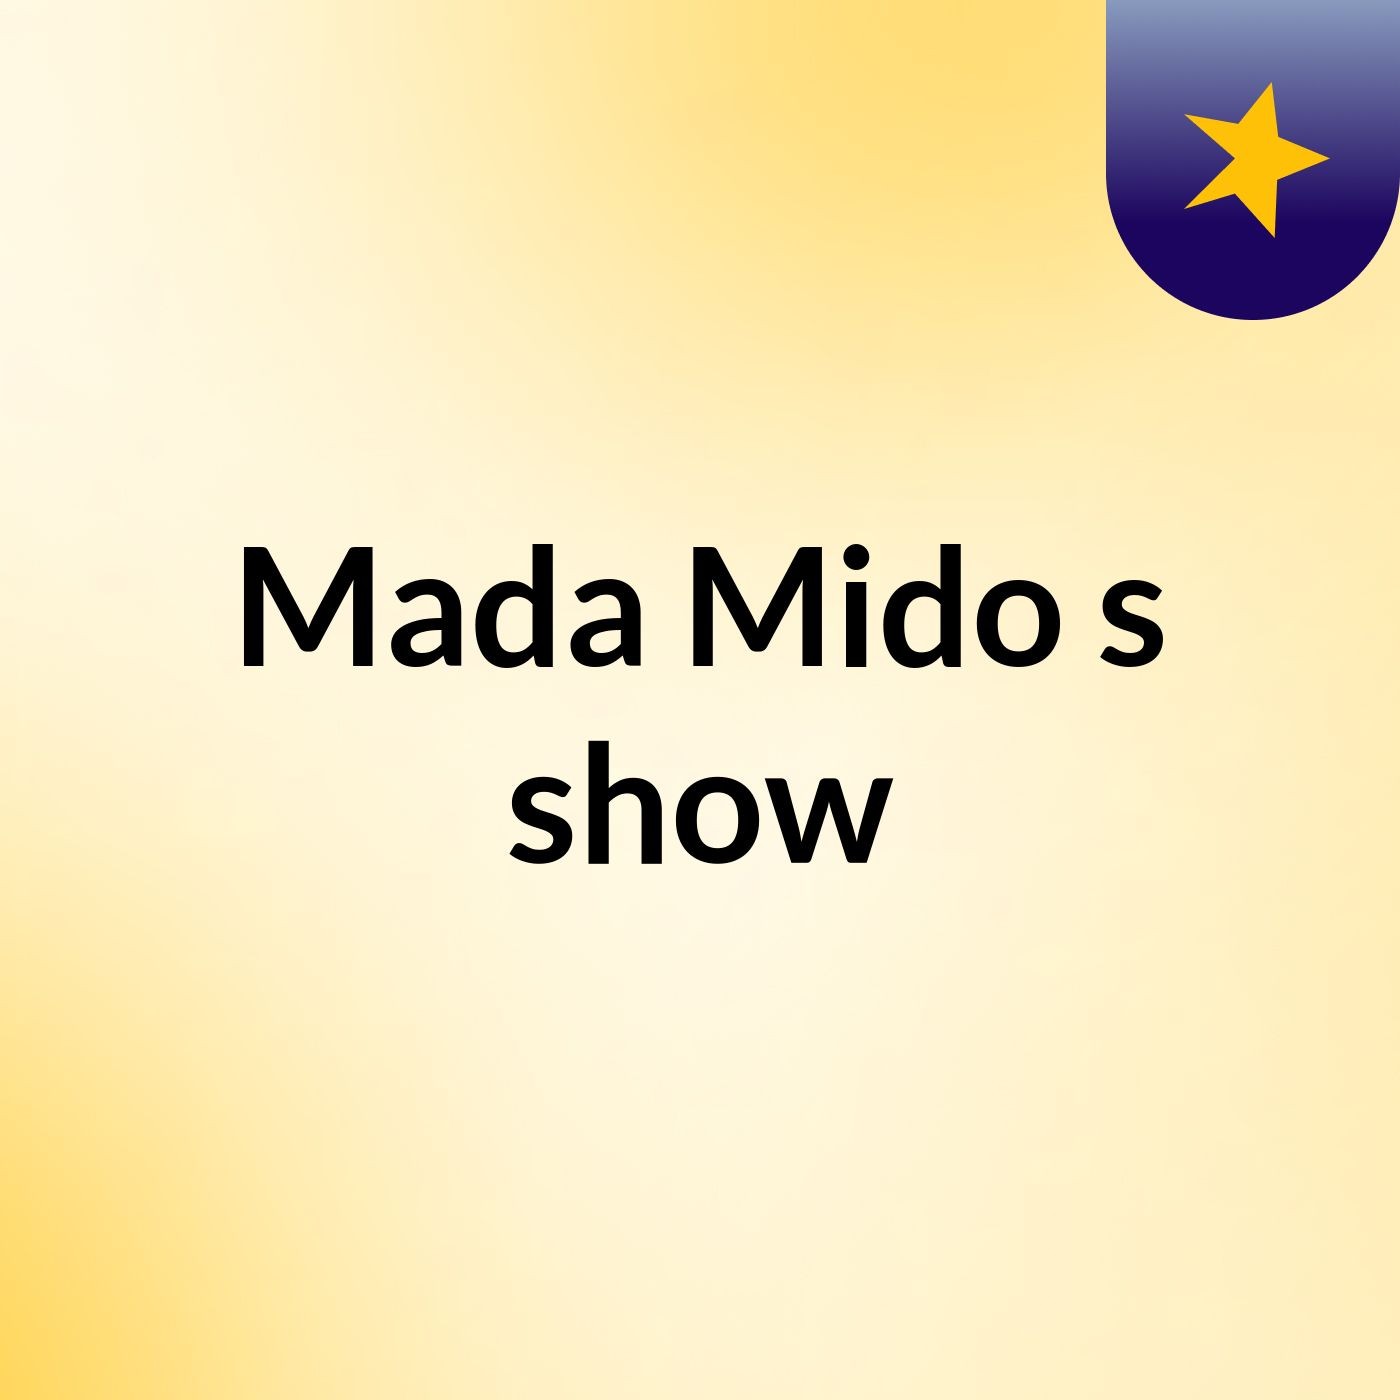 Mada Mido's show